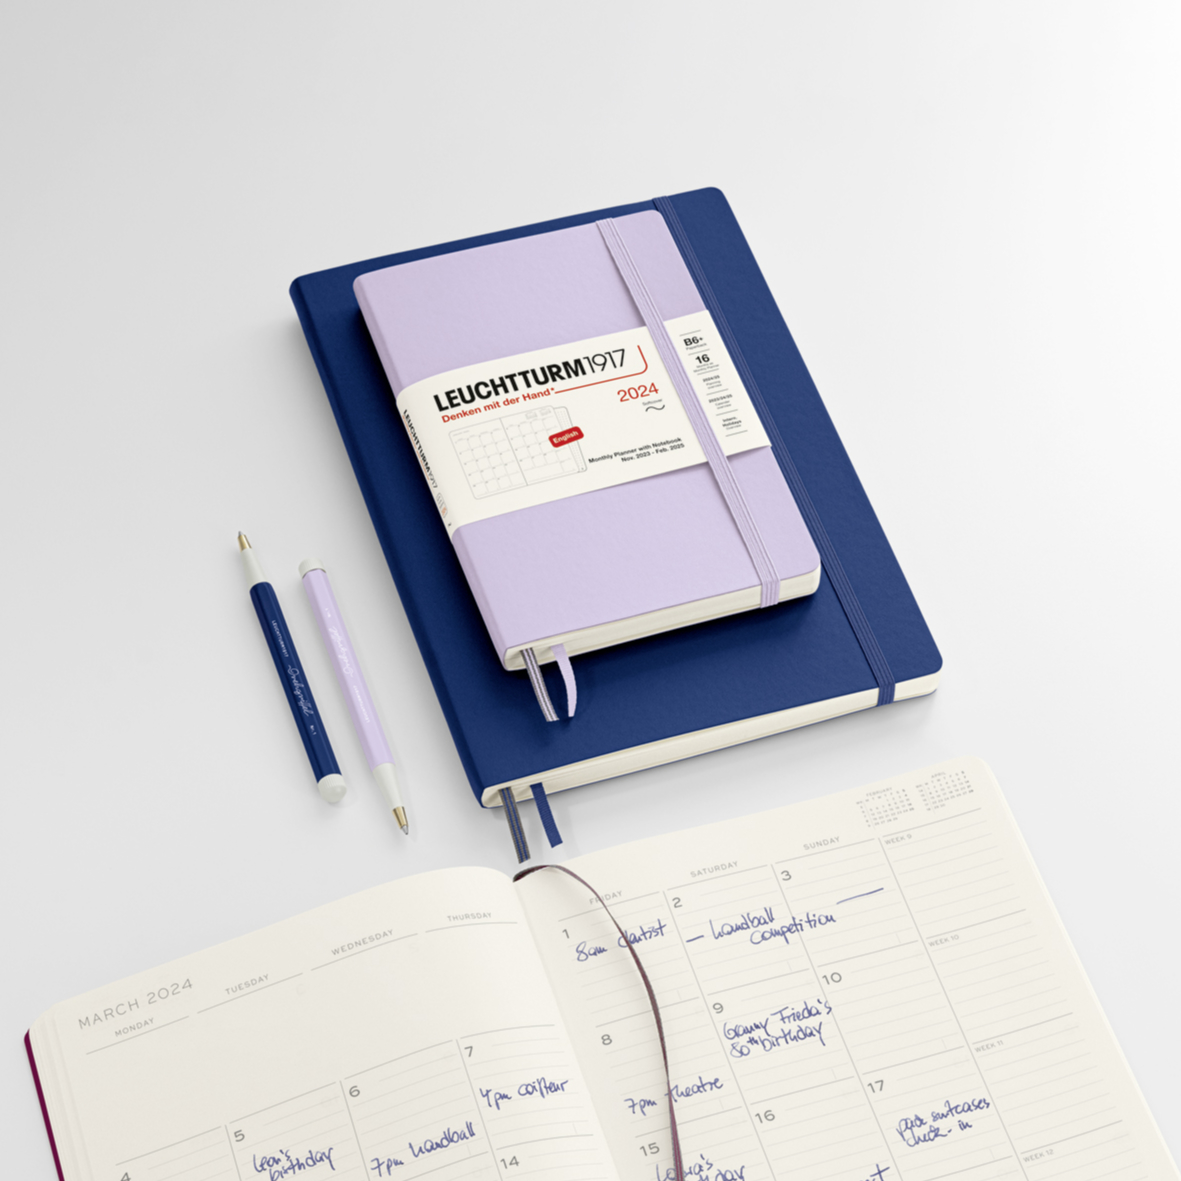 Leuchtturm Notebook  Weekly planner notebook, Softcover notebook